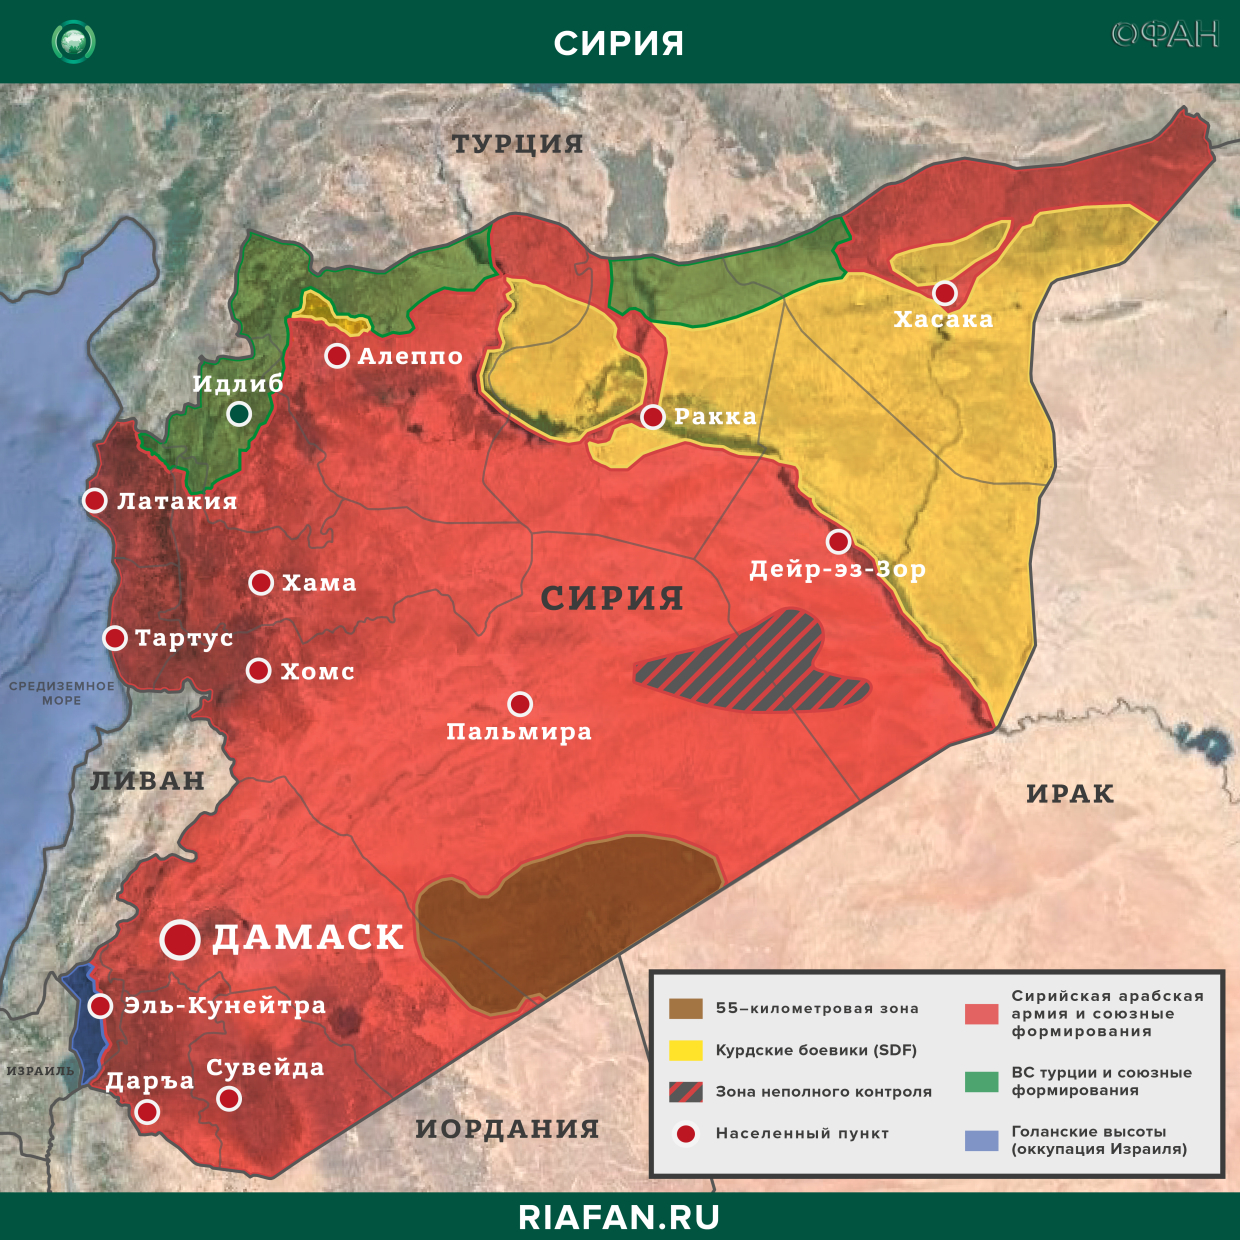 Nouvelles de Syrie 31 Août 16.30: ВС Турции начали строительство нового блокпоста в Идлибе